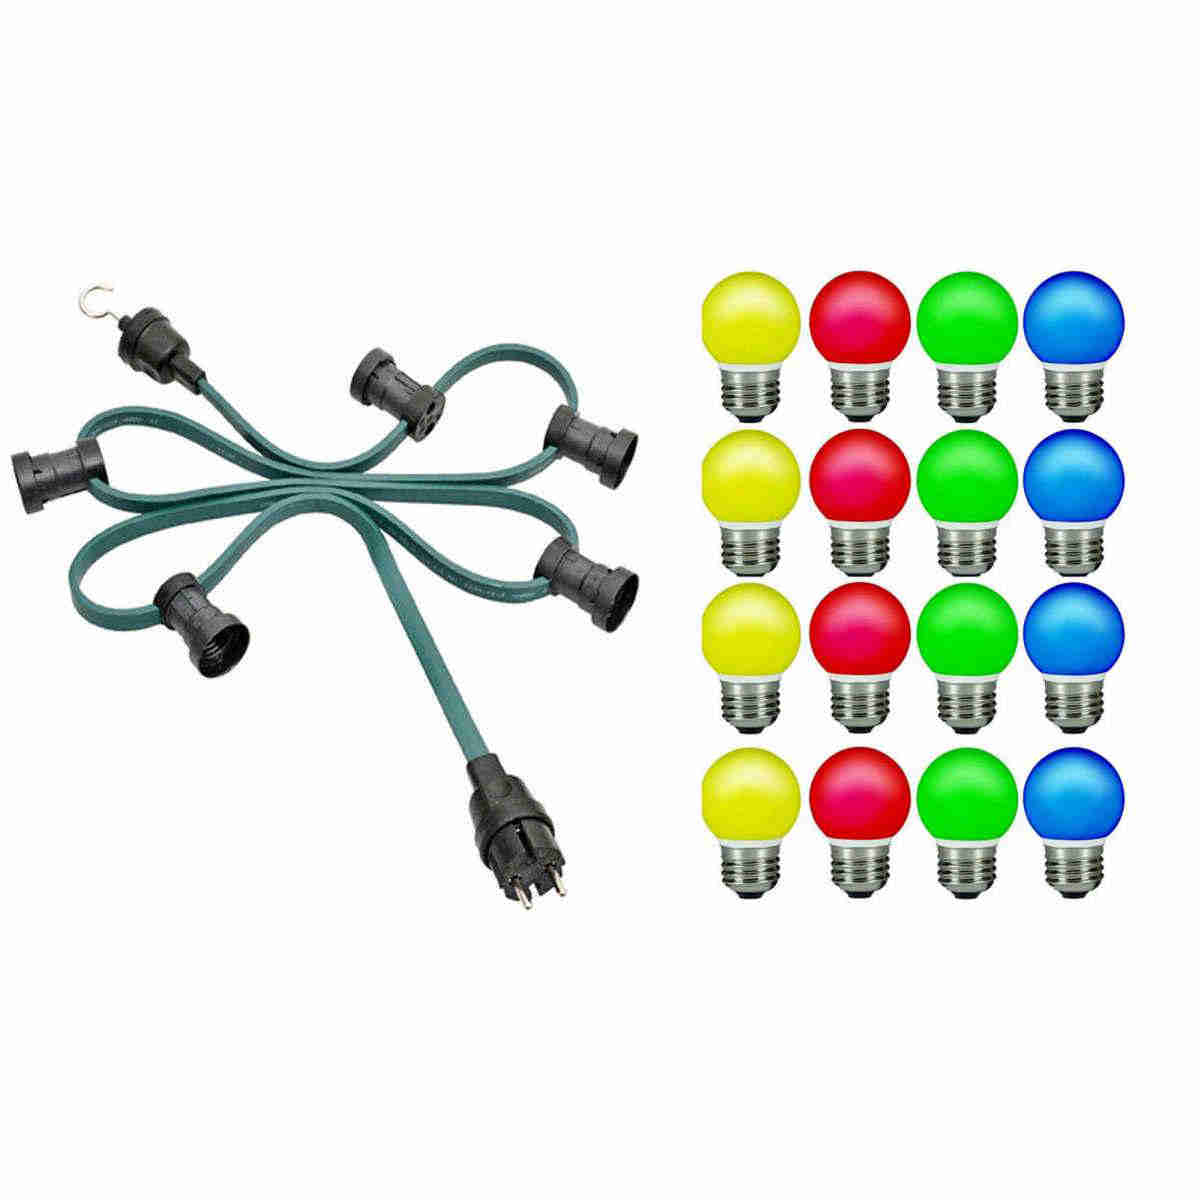 H05RNH2-F2x1,5 Illu-Lichterkette grün 20m IP44 inkl. 20x E27 Fassungen, 20x Dichtringe inkl. LED Tropfenlampen E27 rot, grün, gelb, rot, blau für innen und aussen (Kalt)